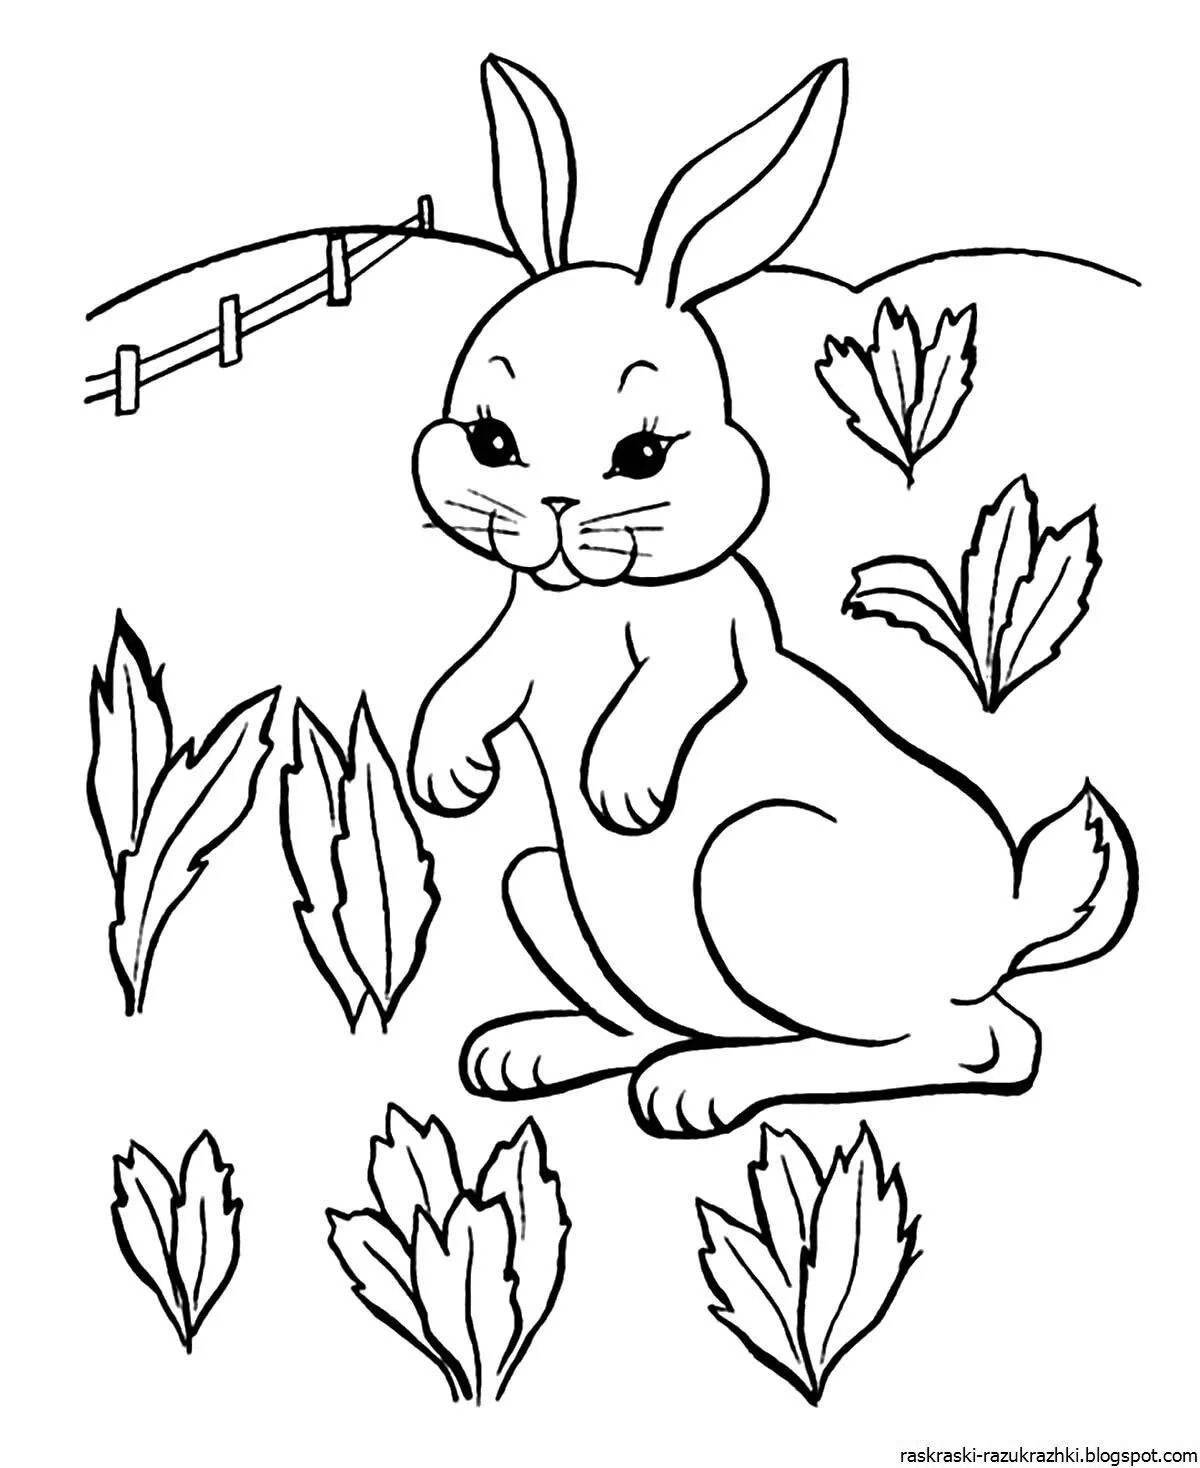 Яркая раскраска кролик для детей